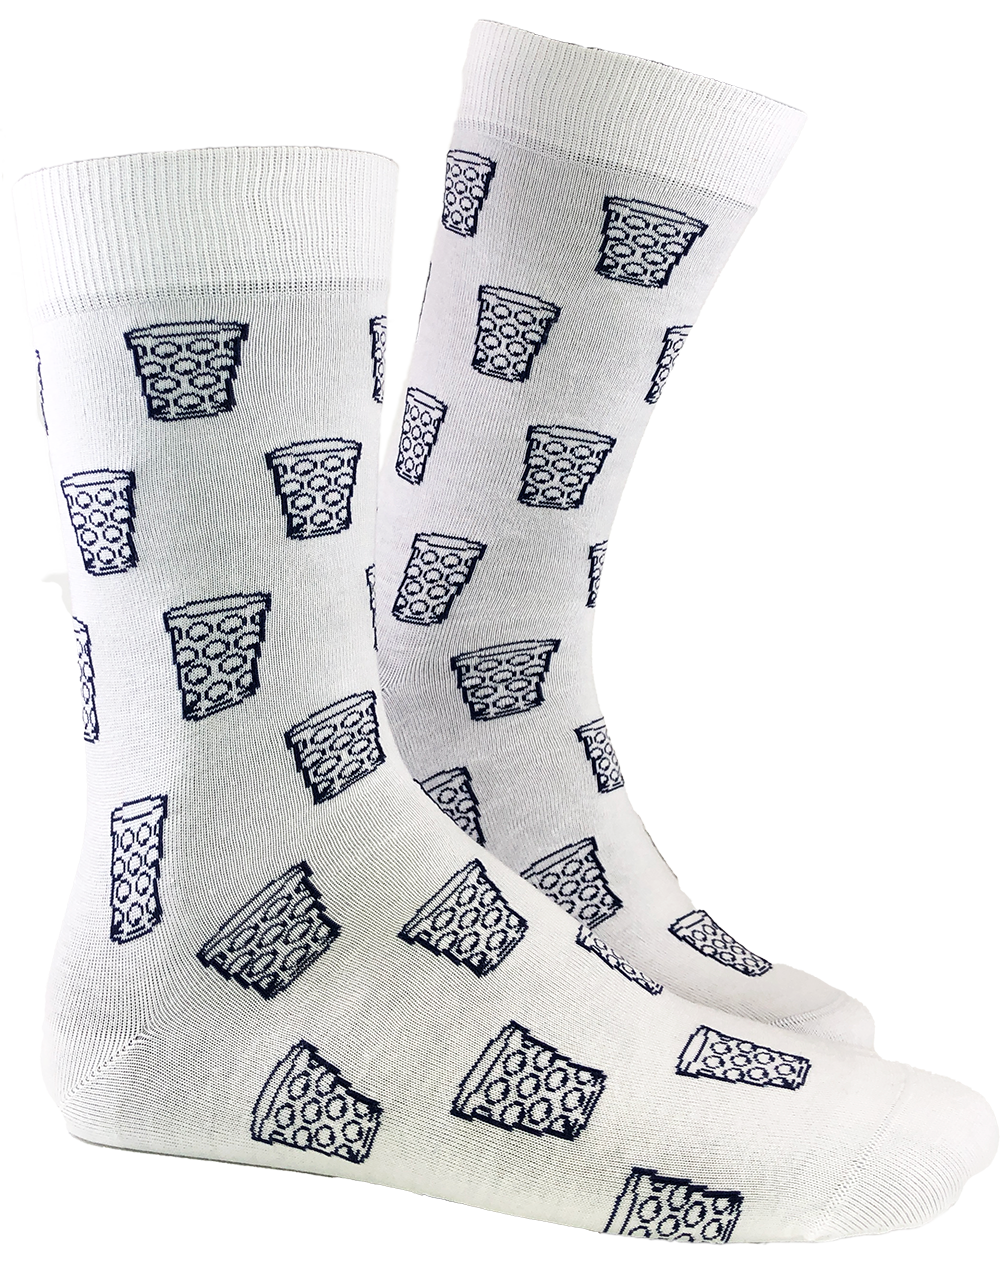 Socken "coole Pälzer Socke" (weiß) - Pfälzer Freiheit